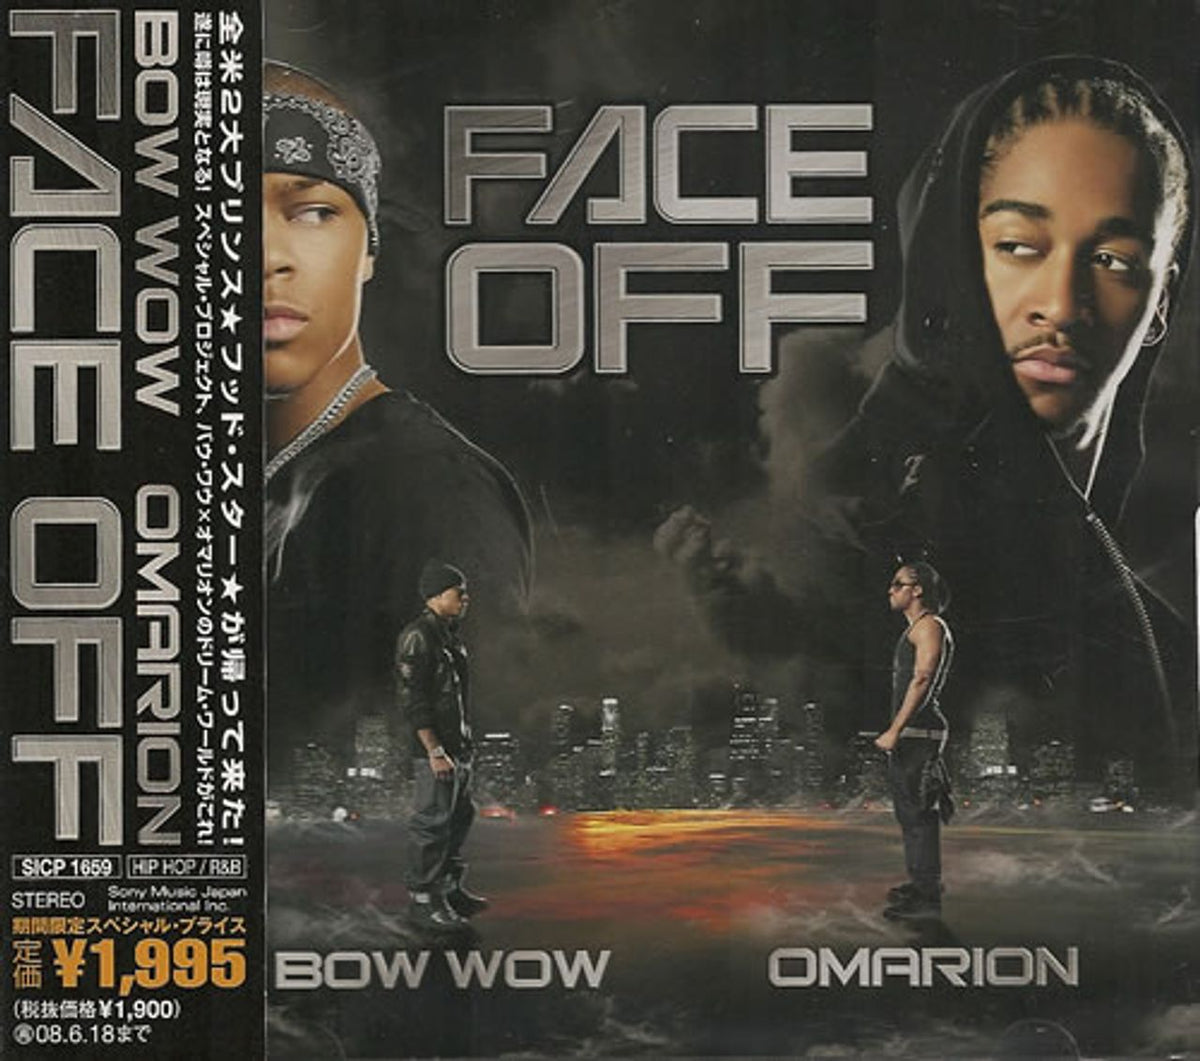 Lil Bow Wow Face Off Japanese Promo CD album — RareVinyl.com